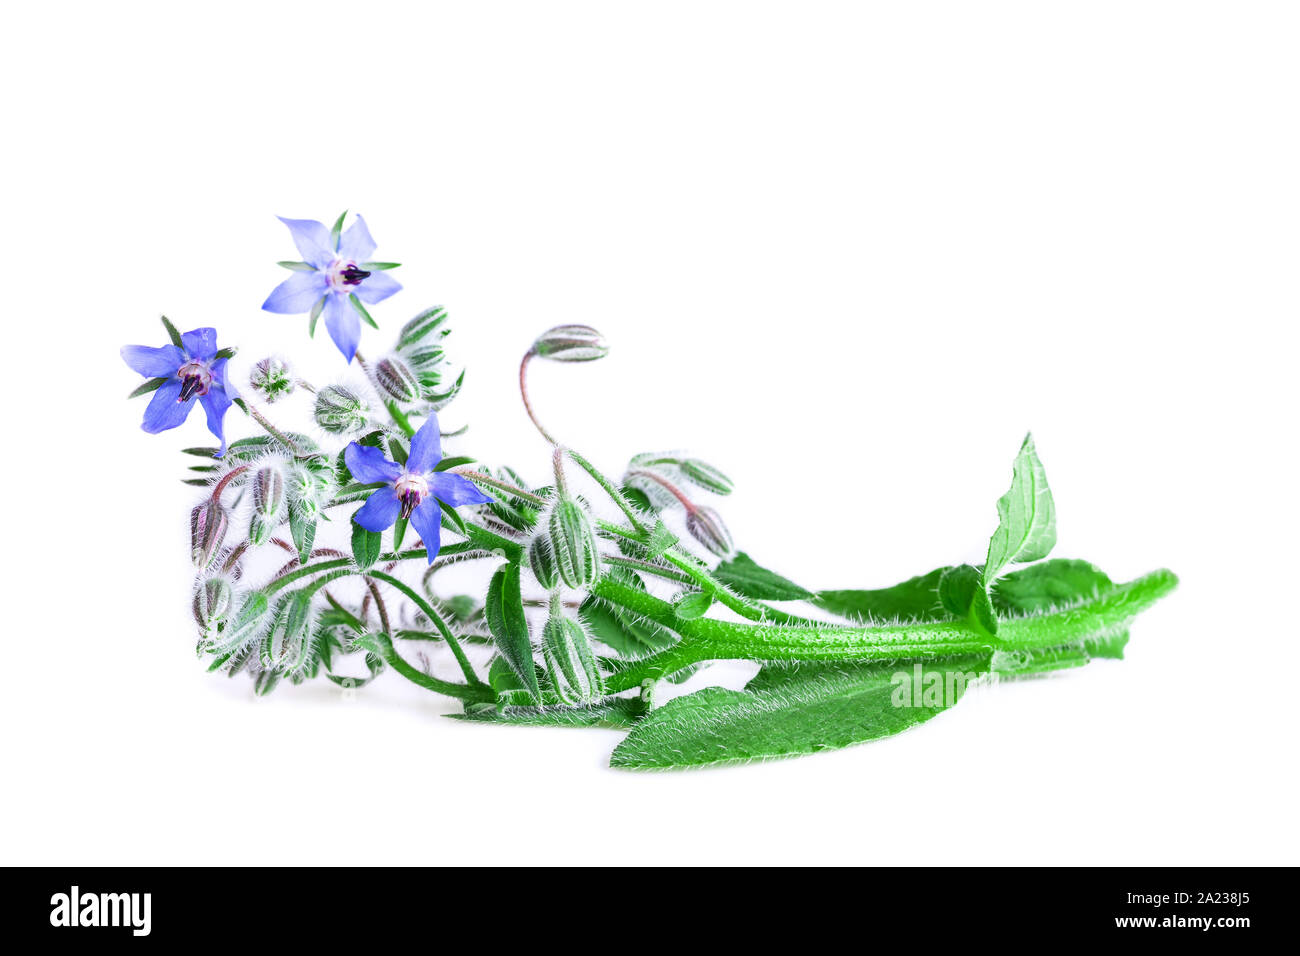 La borraja aislado en blanco. La borraja planta fresca con flores azules (Borago officinalis). Foto de stock